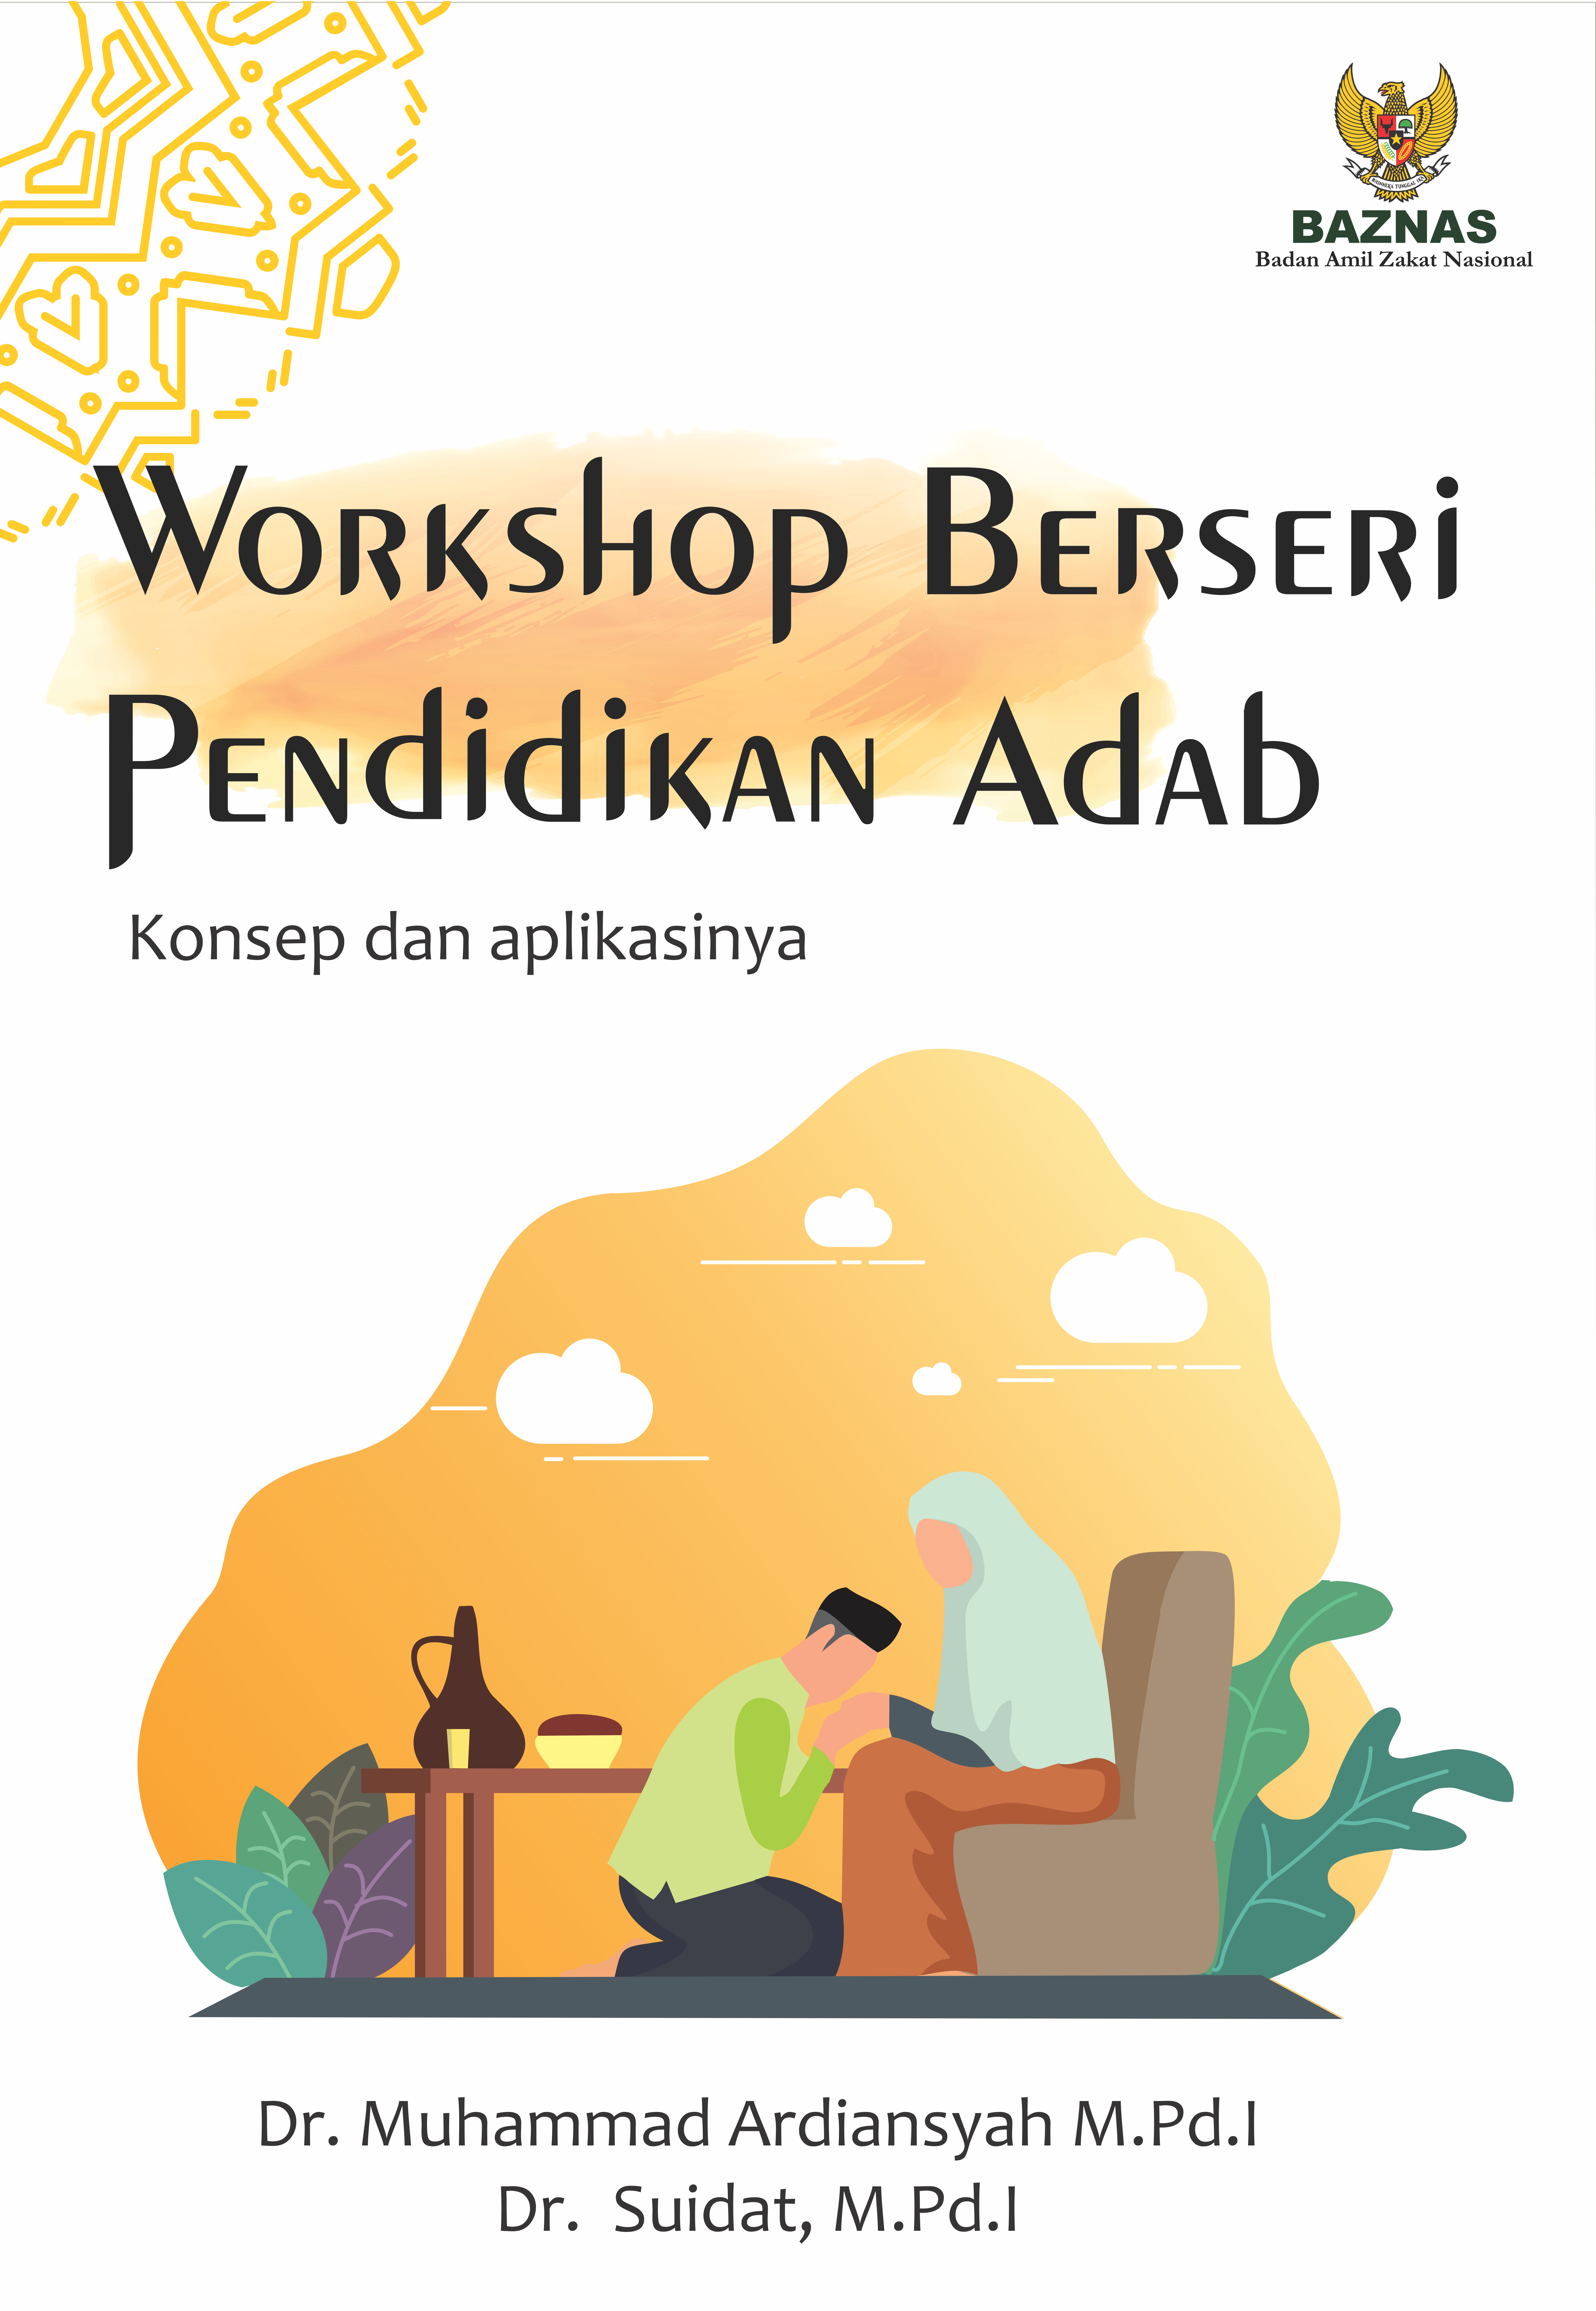 Workshop Berseri Pendidikan Adab